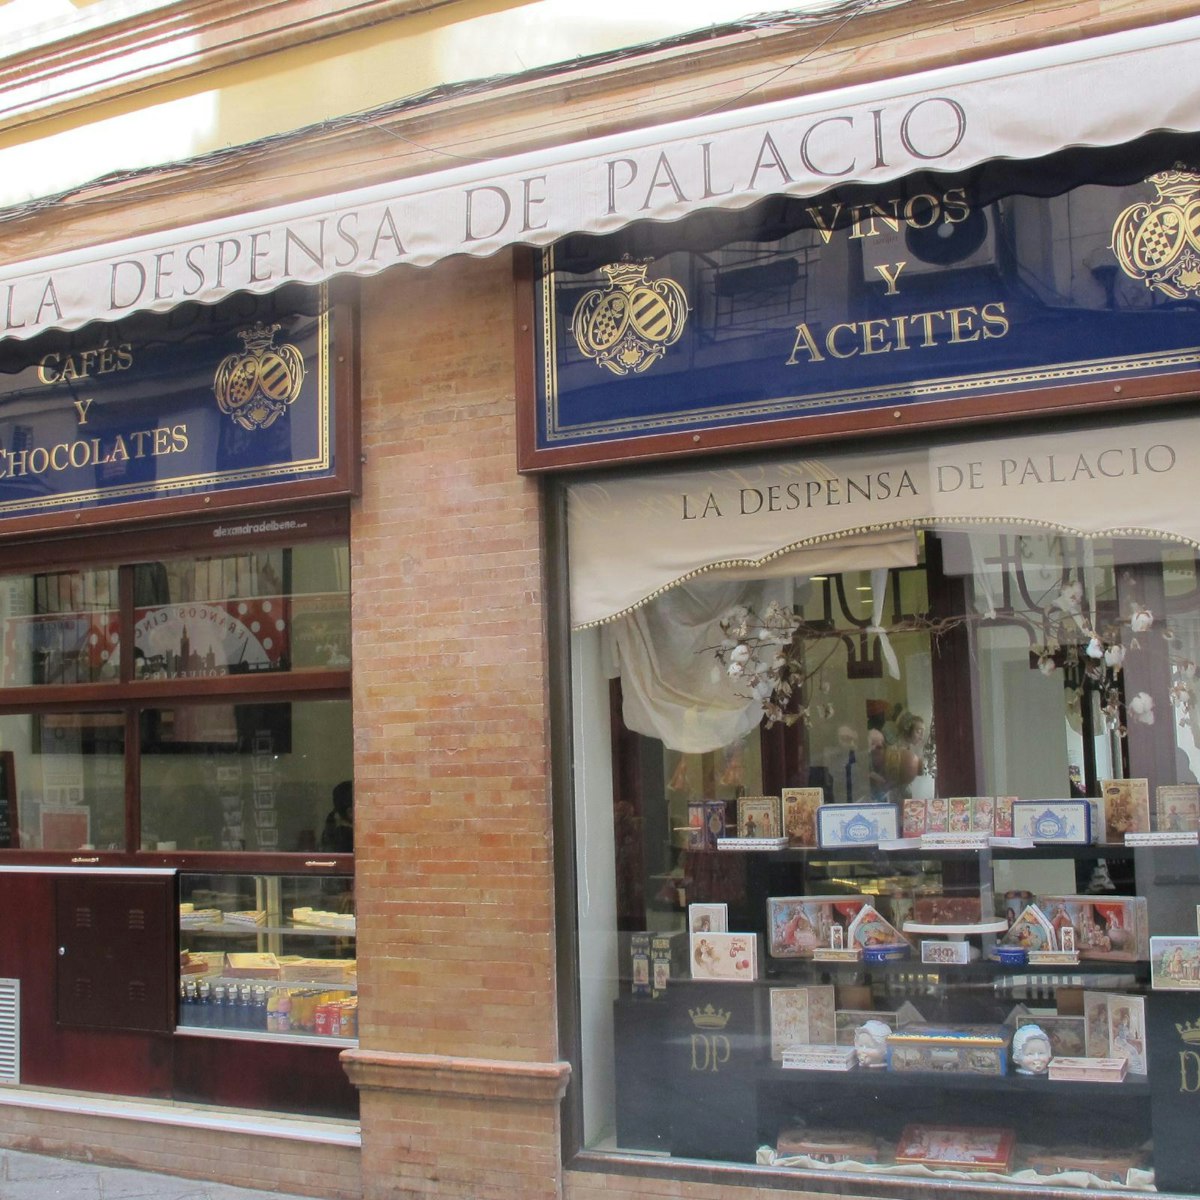 Exterior of shop with window display, La Despensa del Palacio confiteria.